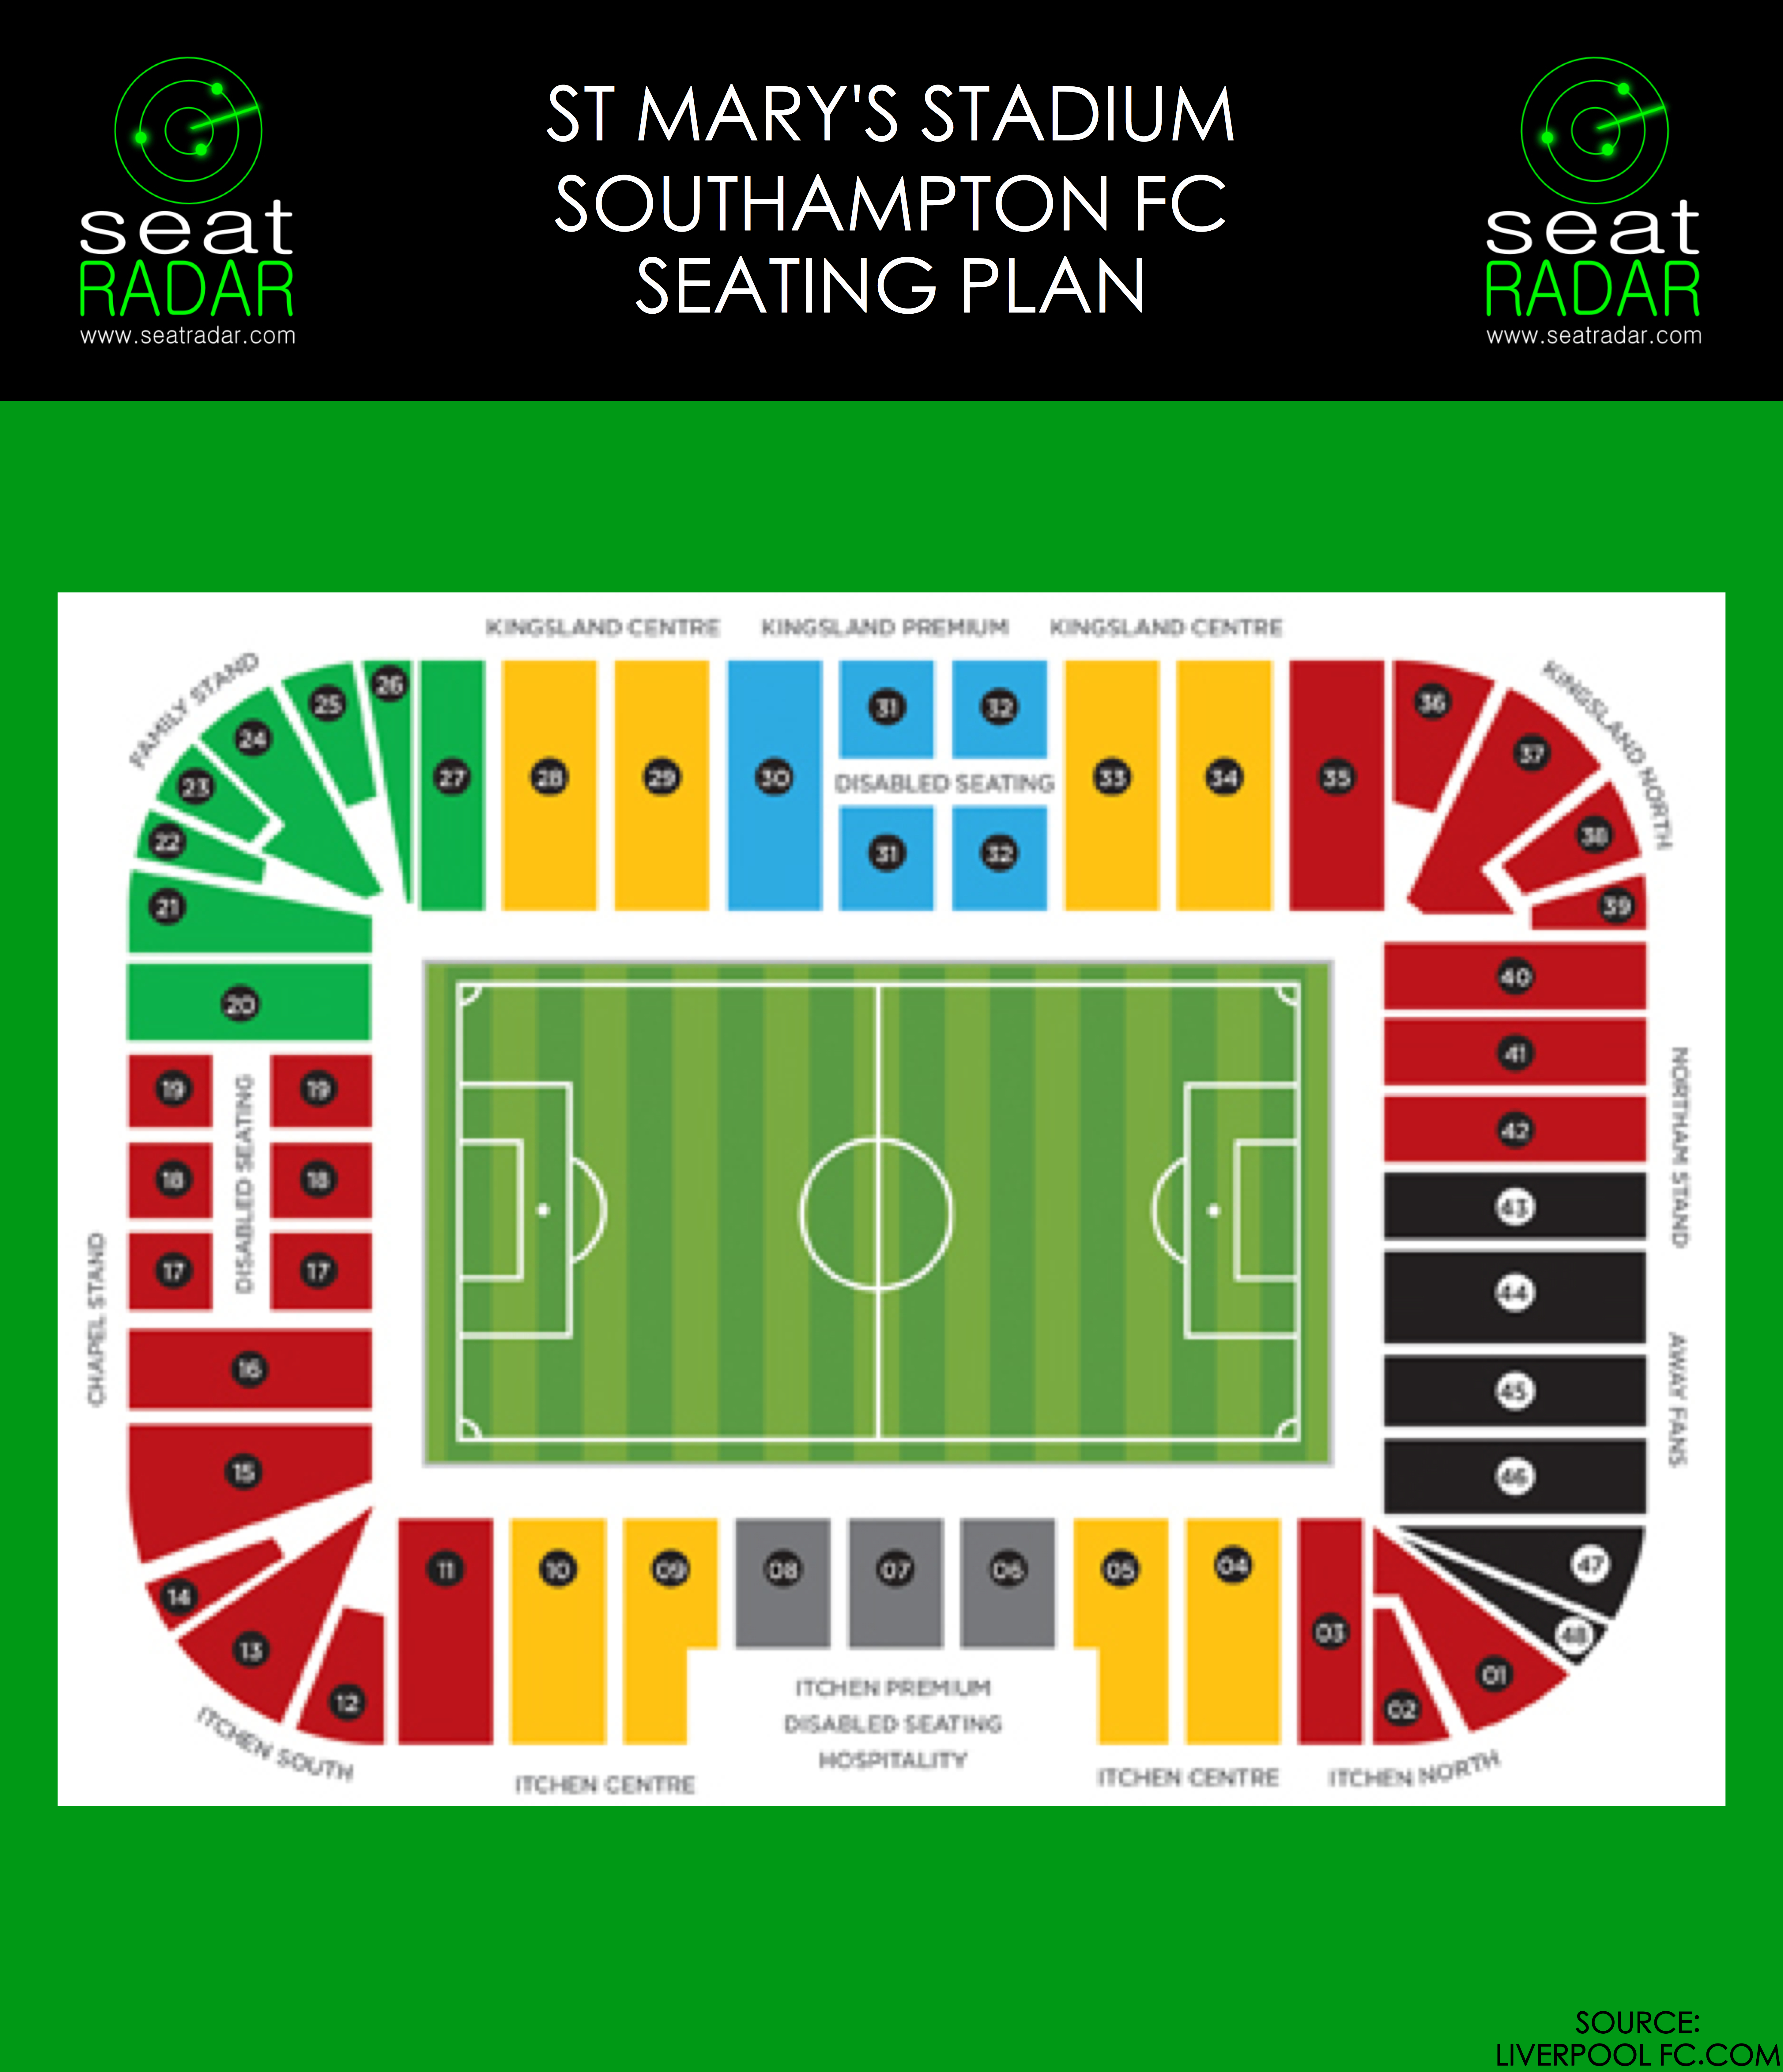 St Mary's Stadium (Southampton) Seating Plan (Temporary)